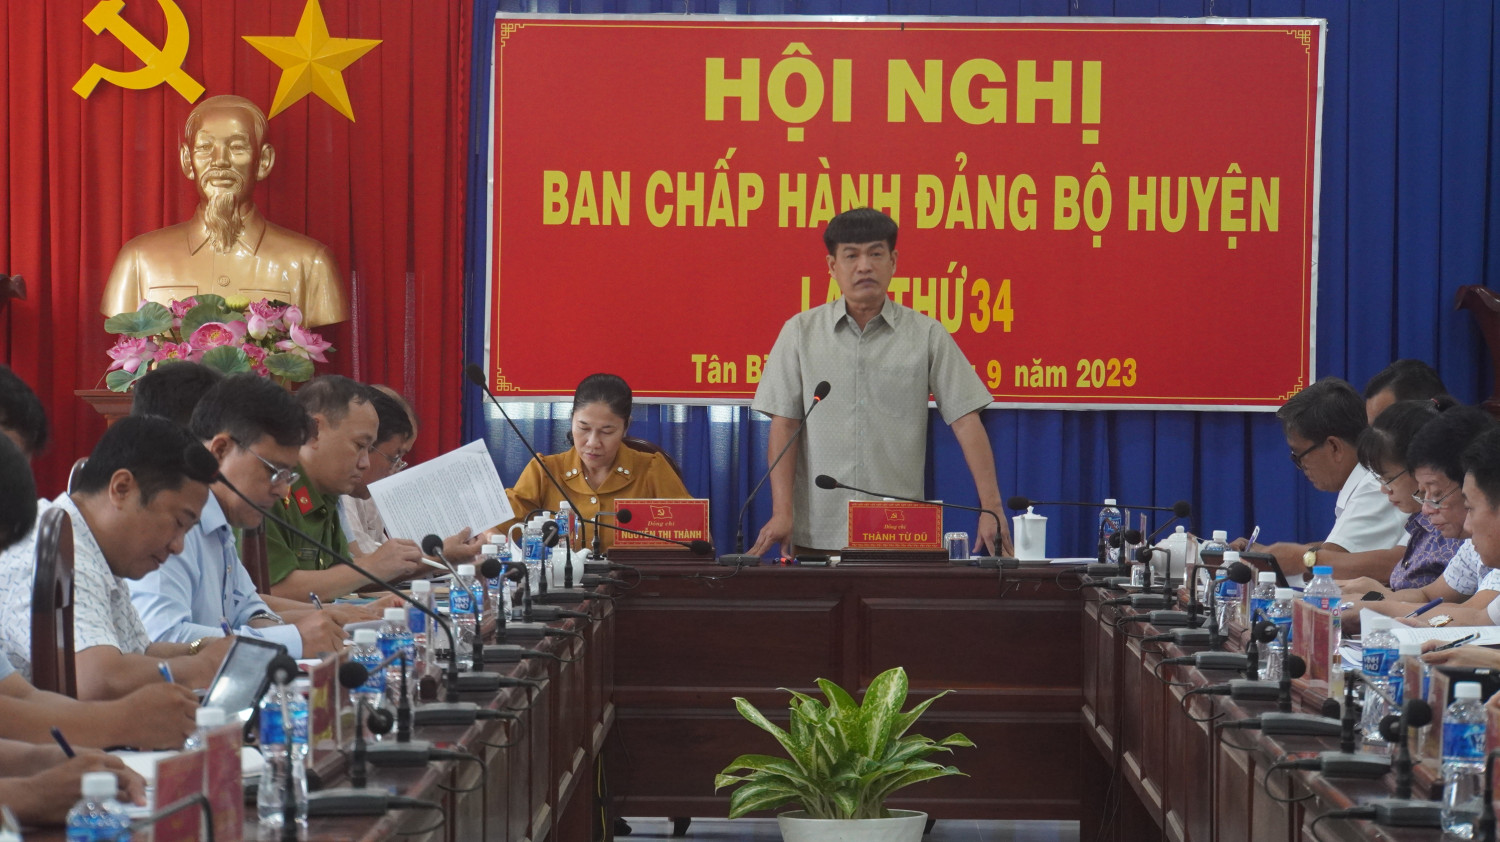 Huyện ủy Tân Biên hội nghị Ban Chấp hành Đảng bộ huyện lần thứ 34